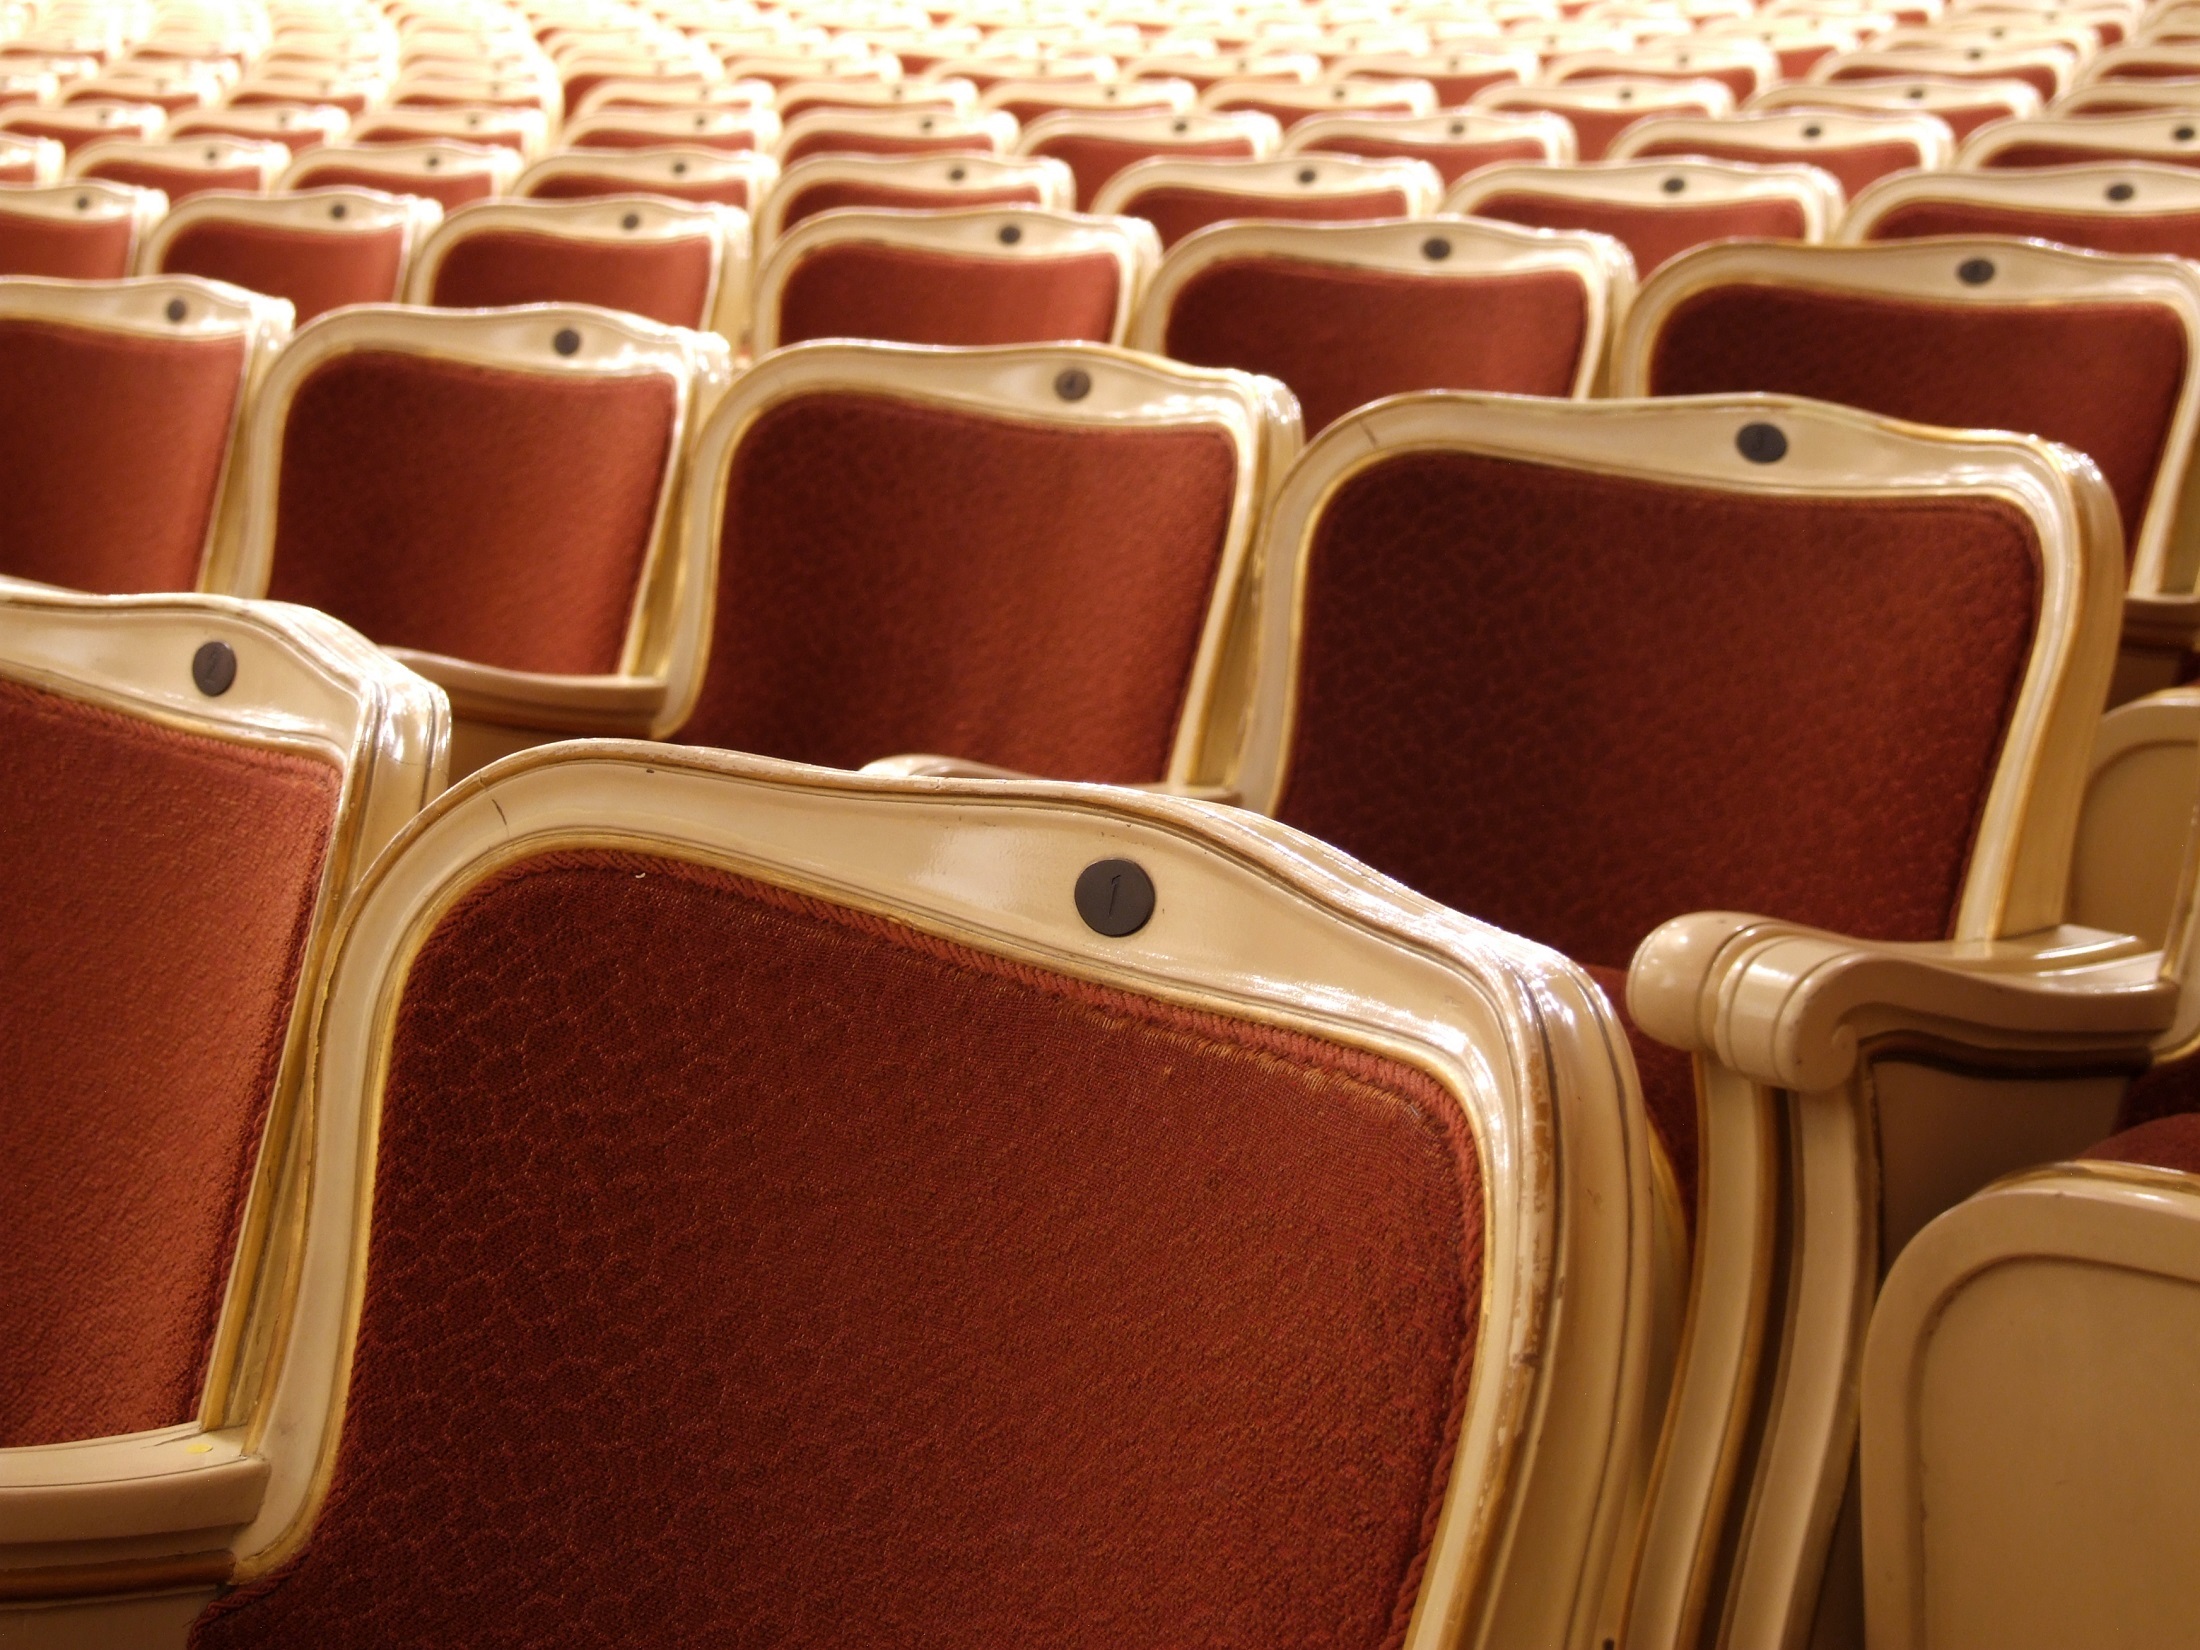 Theatre seats. Кресла в театре. Зрительный зал кресла. Кресла в зрительном зале. Театральные кресла в зале.